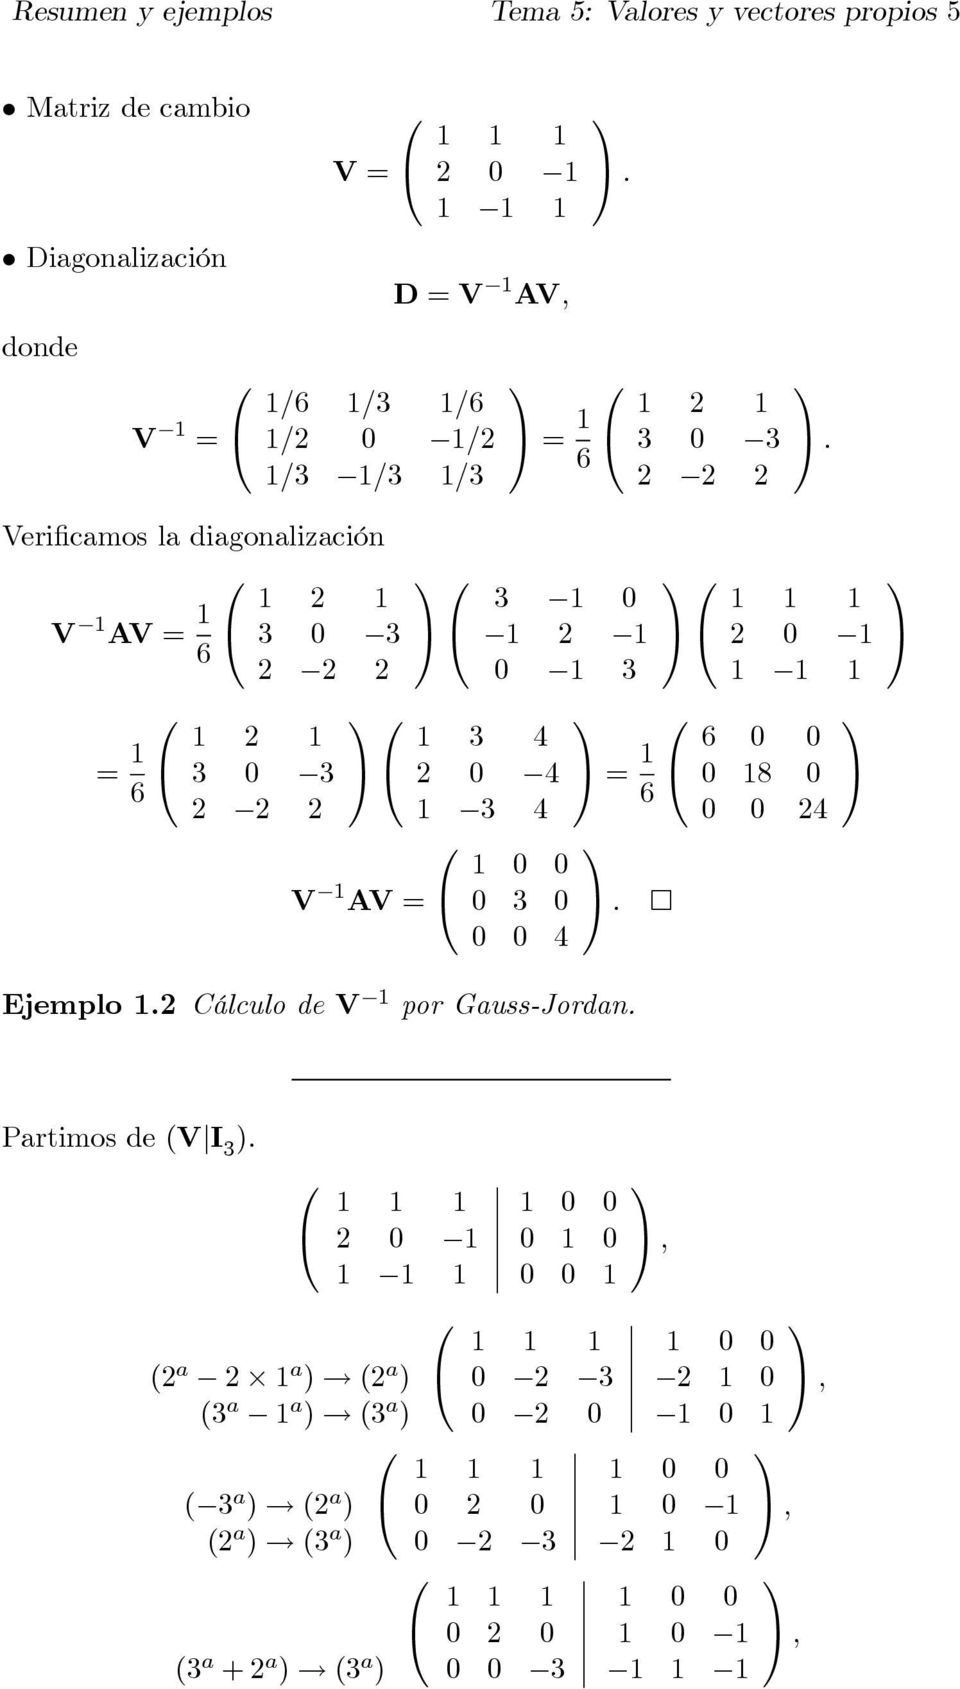 AV 3 3 6 6 3 3 V AV 6 3 3 3 4 4 3 4 3 4 3 3 6 Ejemplo Cálculo de V por Gauss-Jordan 6 8